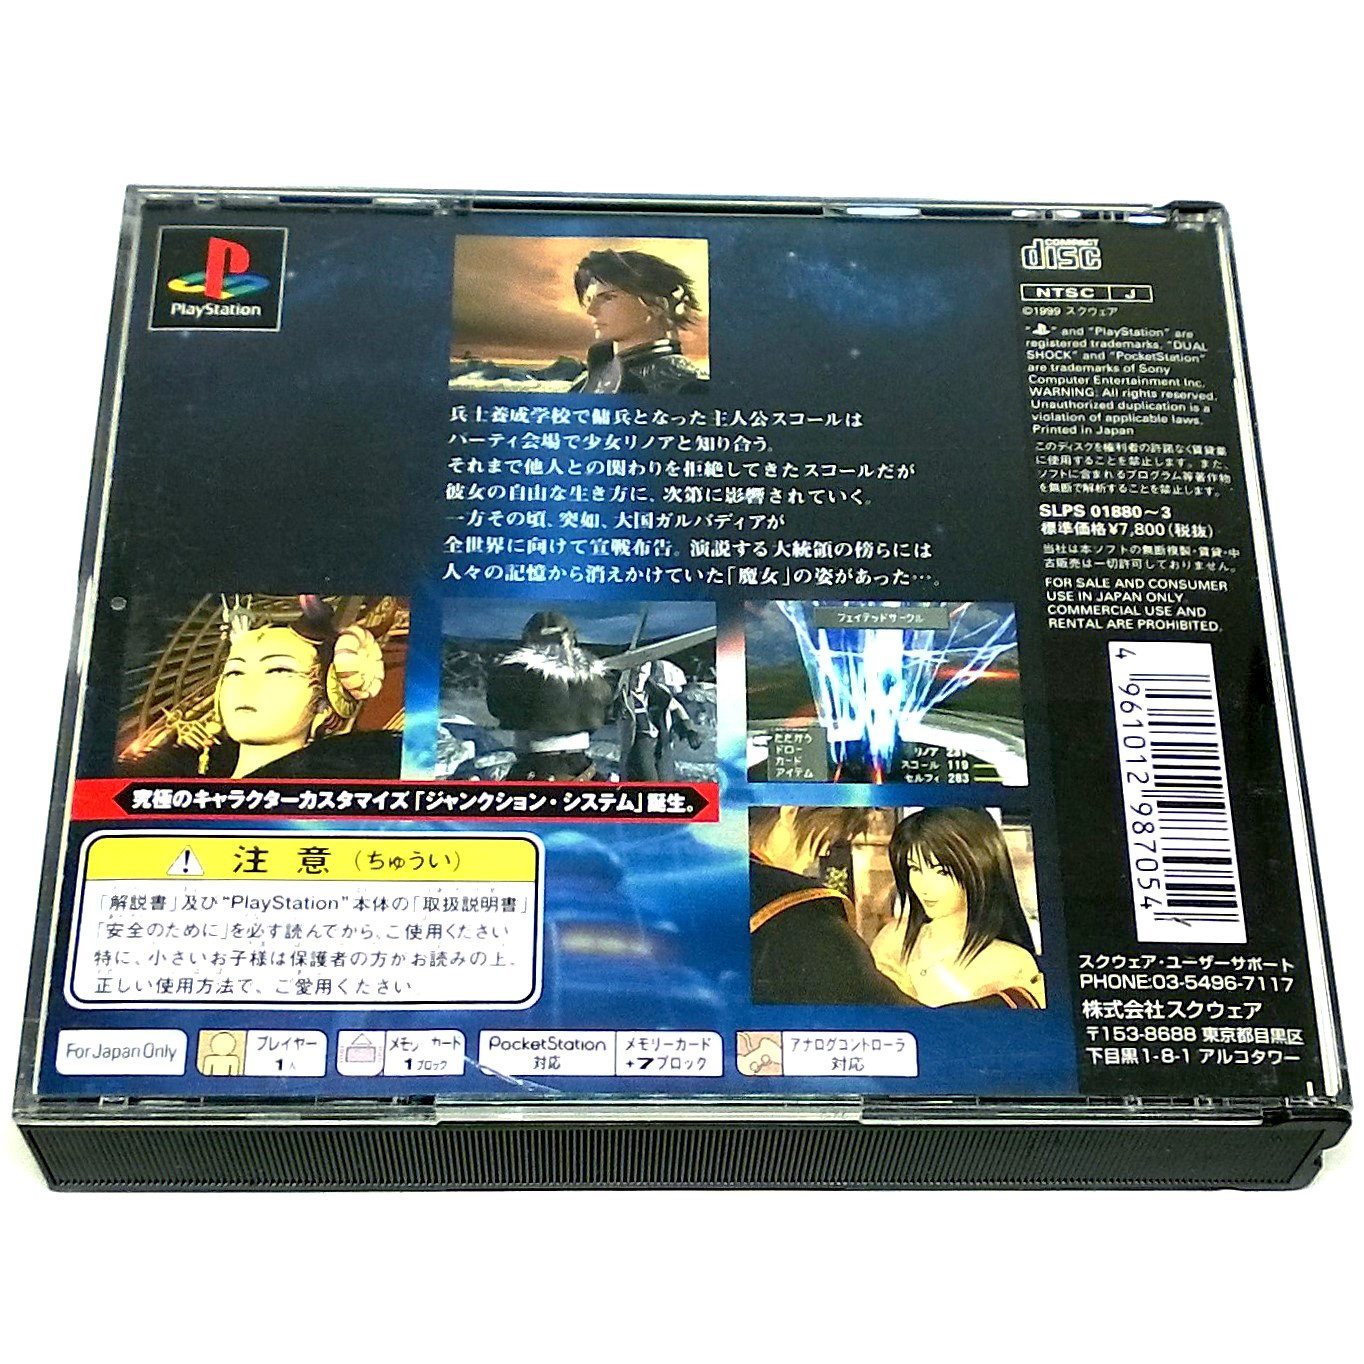 Final Fantasy VIII for PlayStation (import) - Back of case